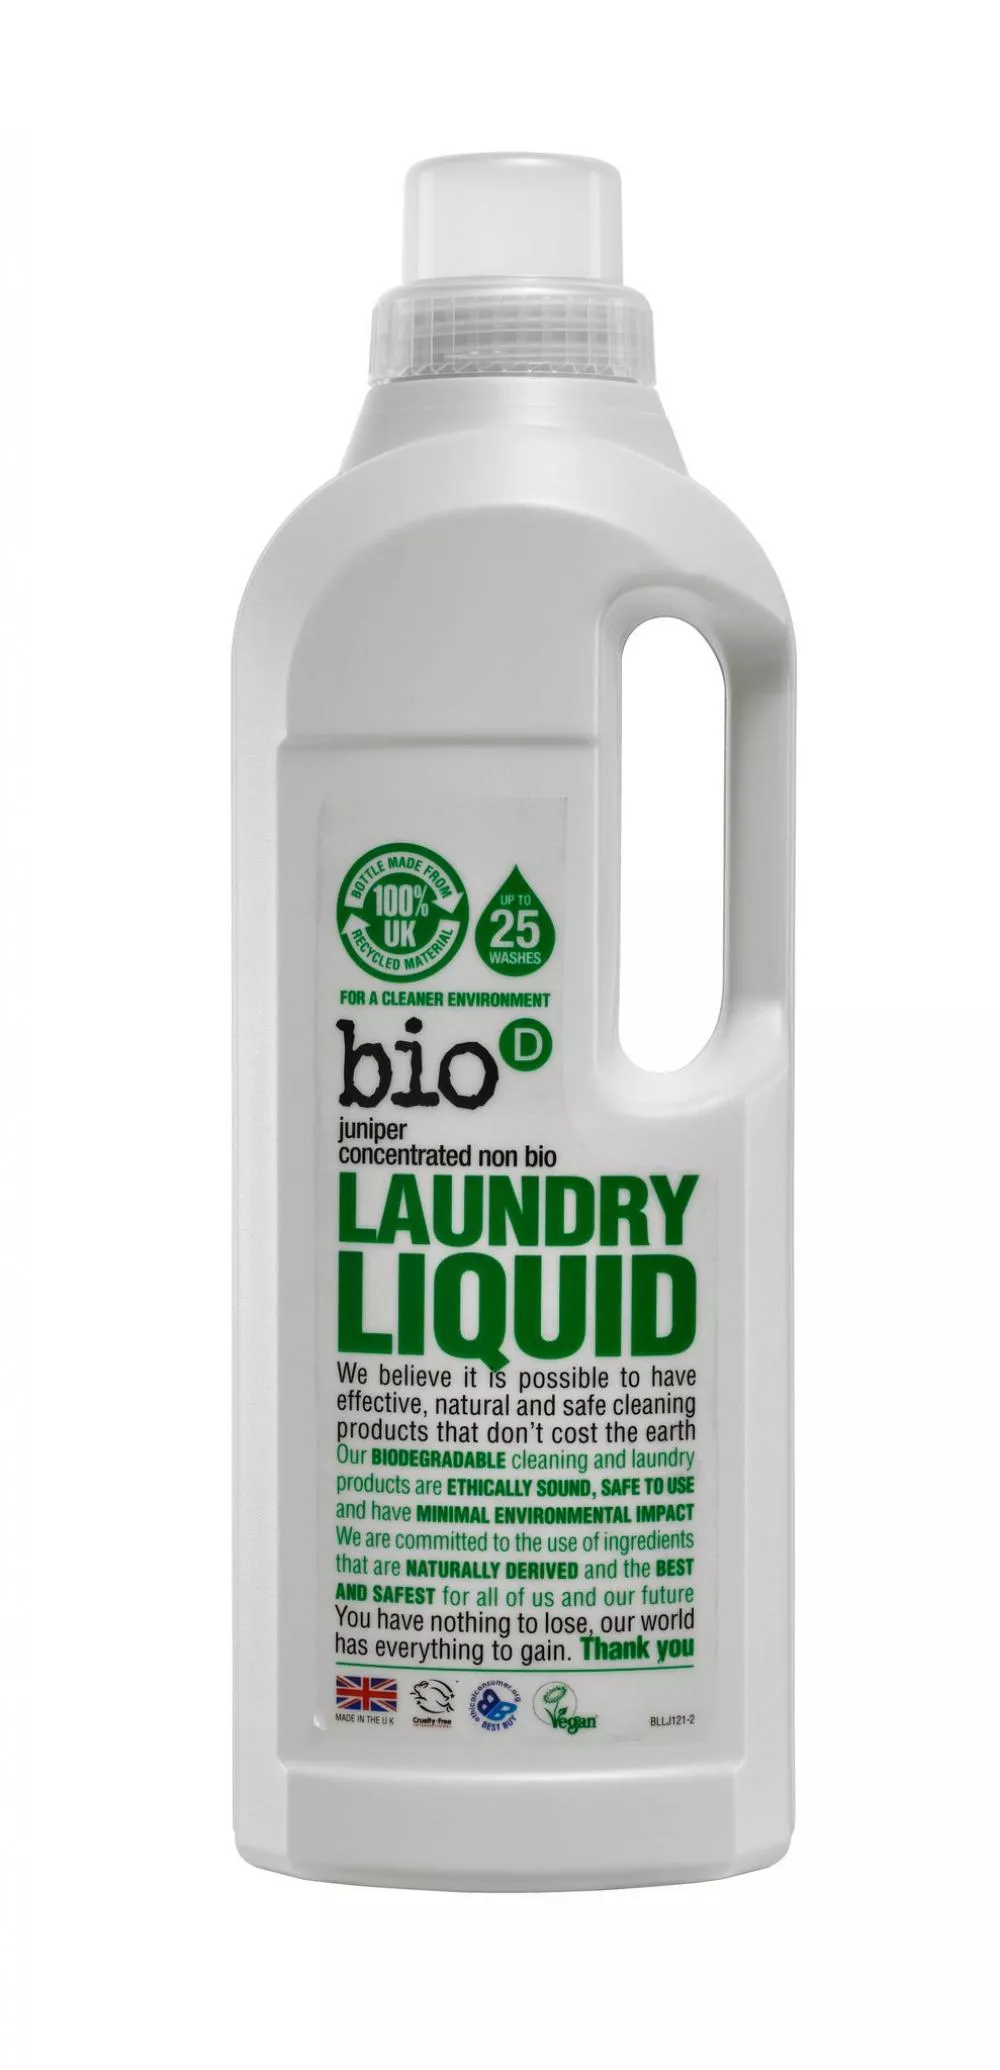 Bio-D Gel lavante liquido con profumo di foresta (1 L)